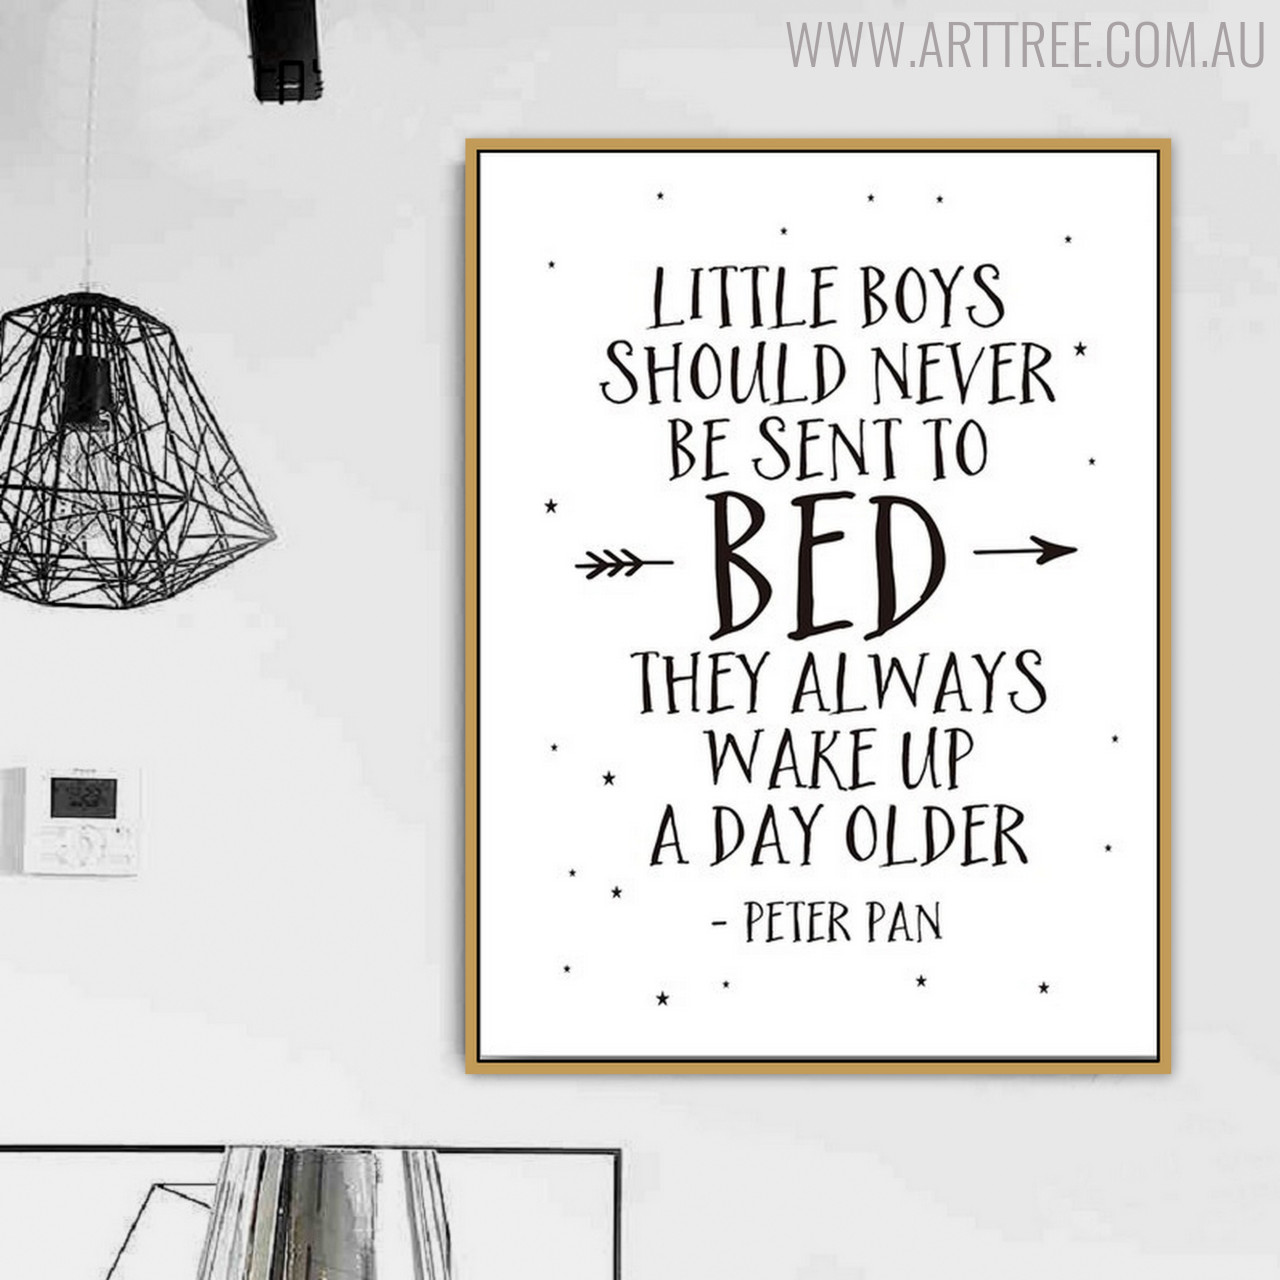 Little Boys Quotes - arttree.com.au